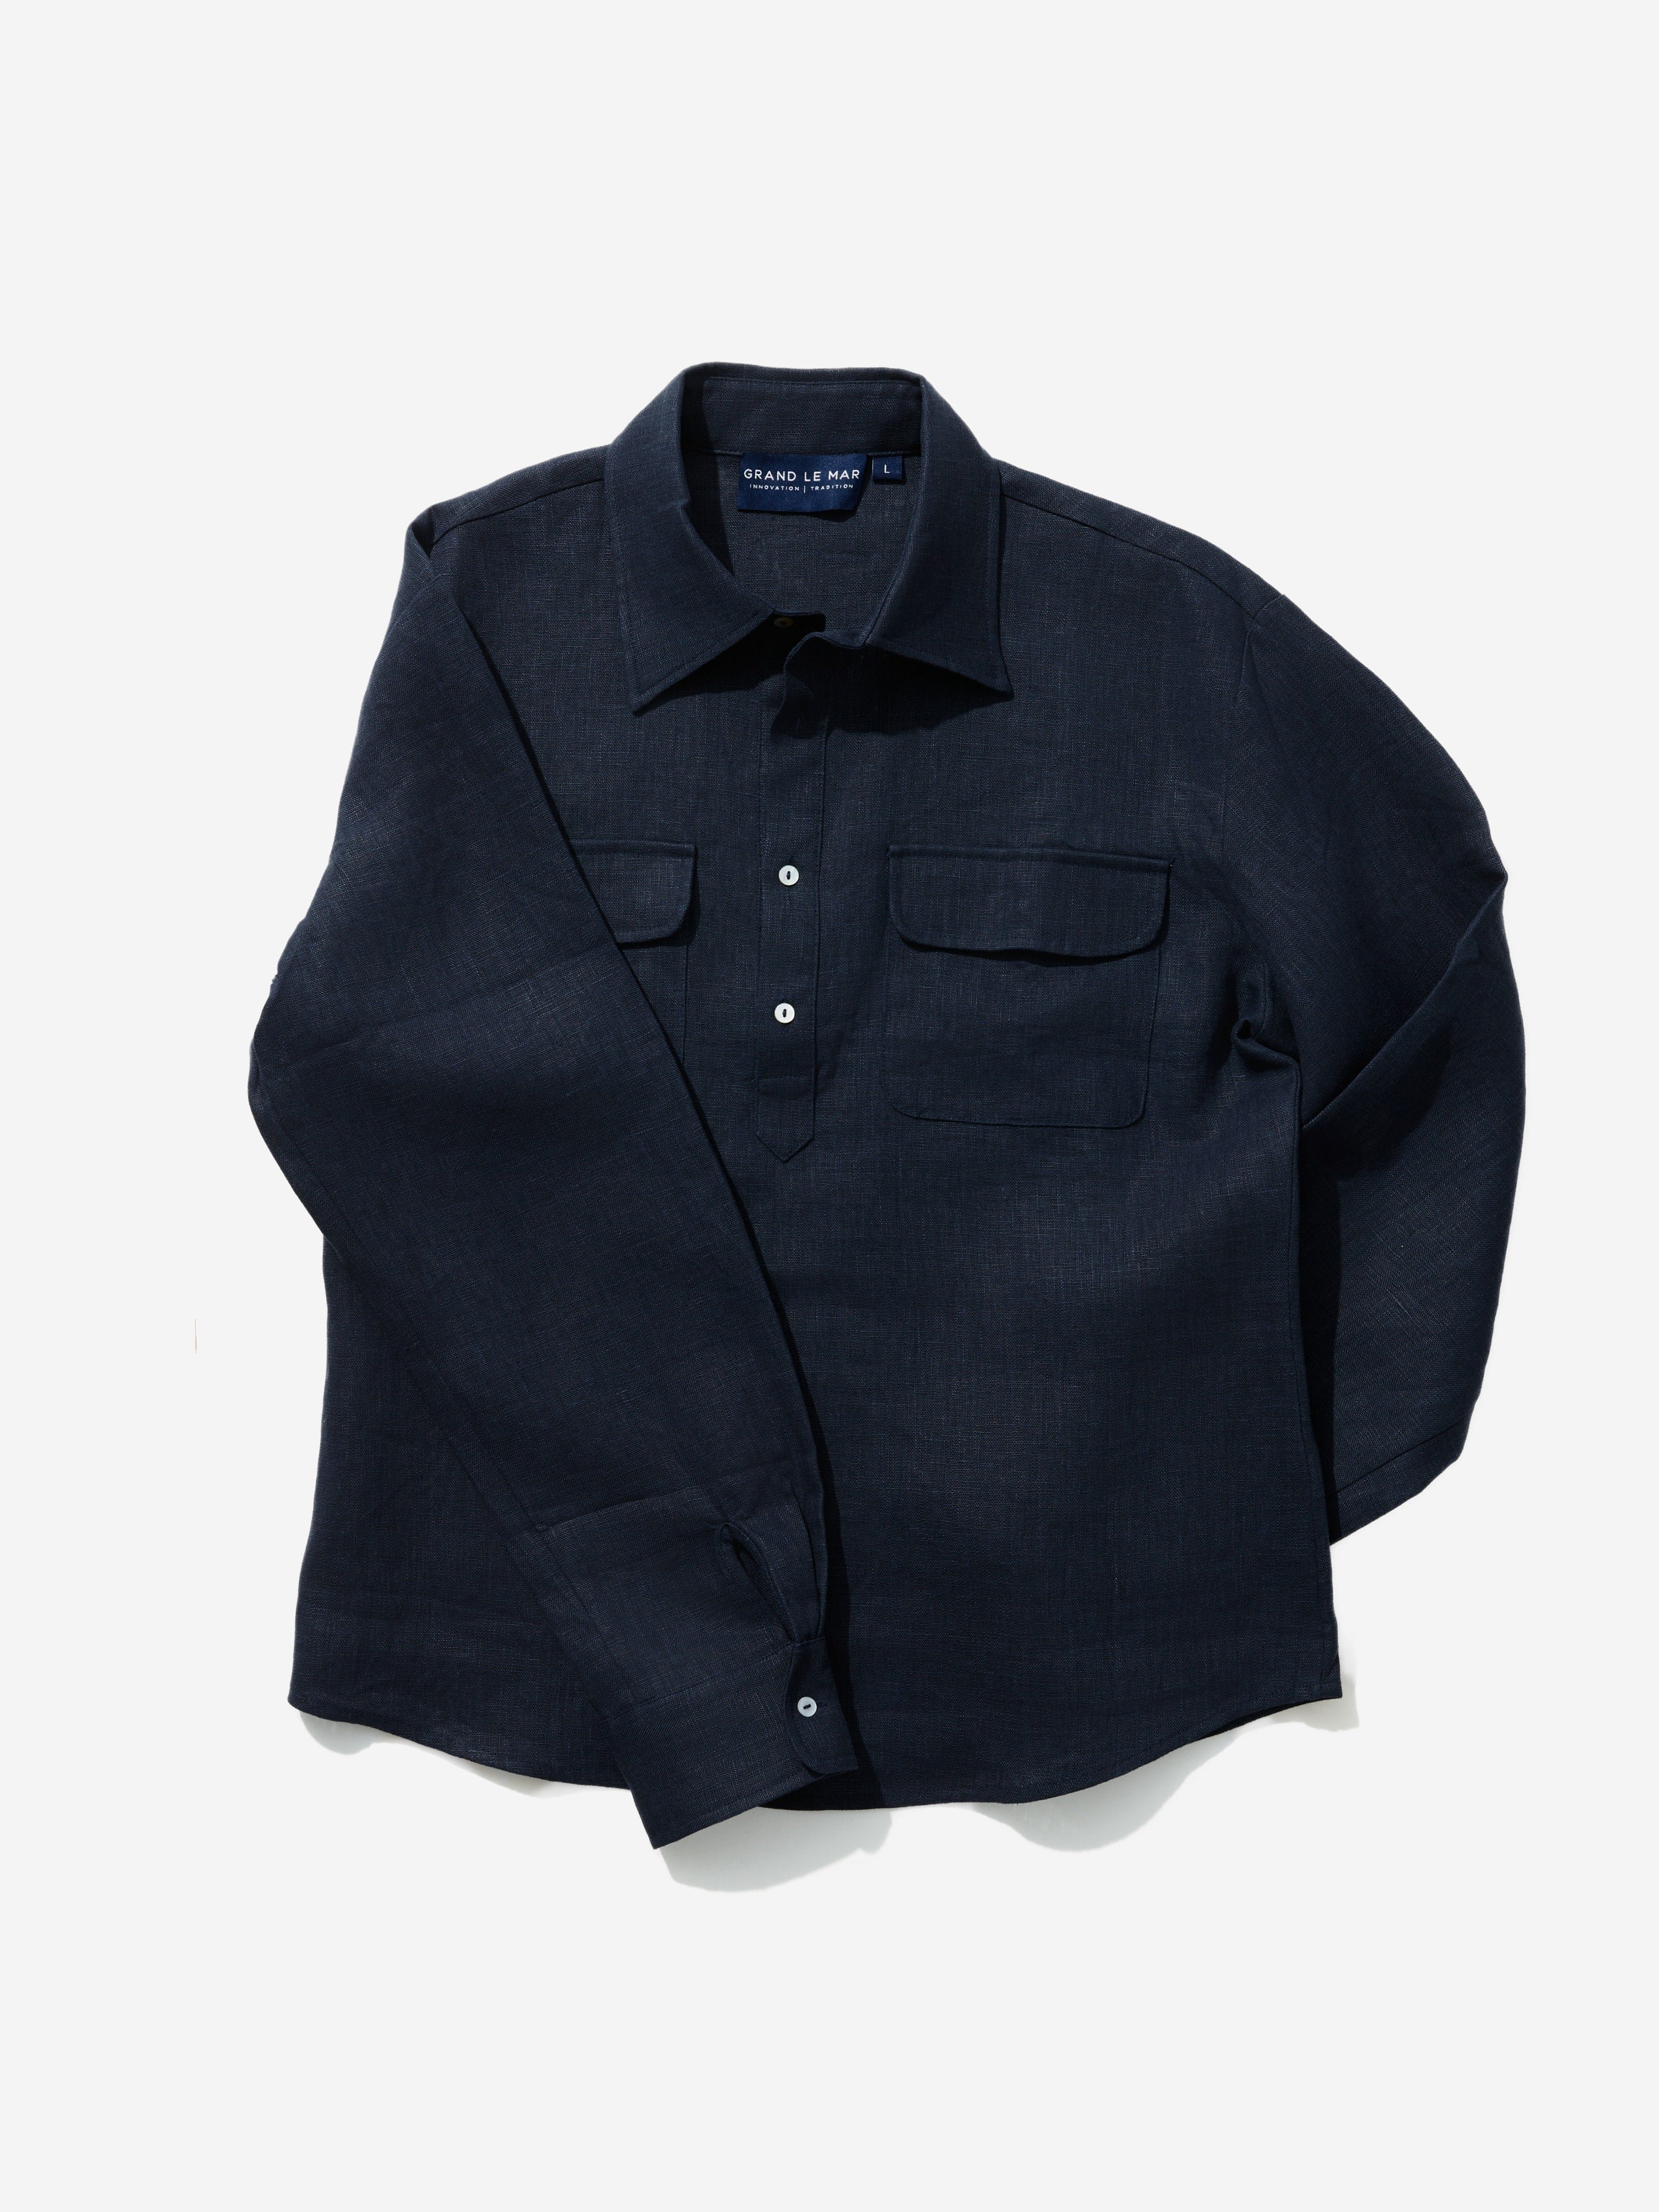 Navy Linen Popover Shirt - Grand Le Mar